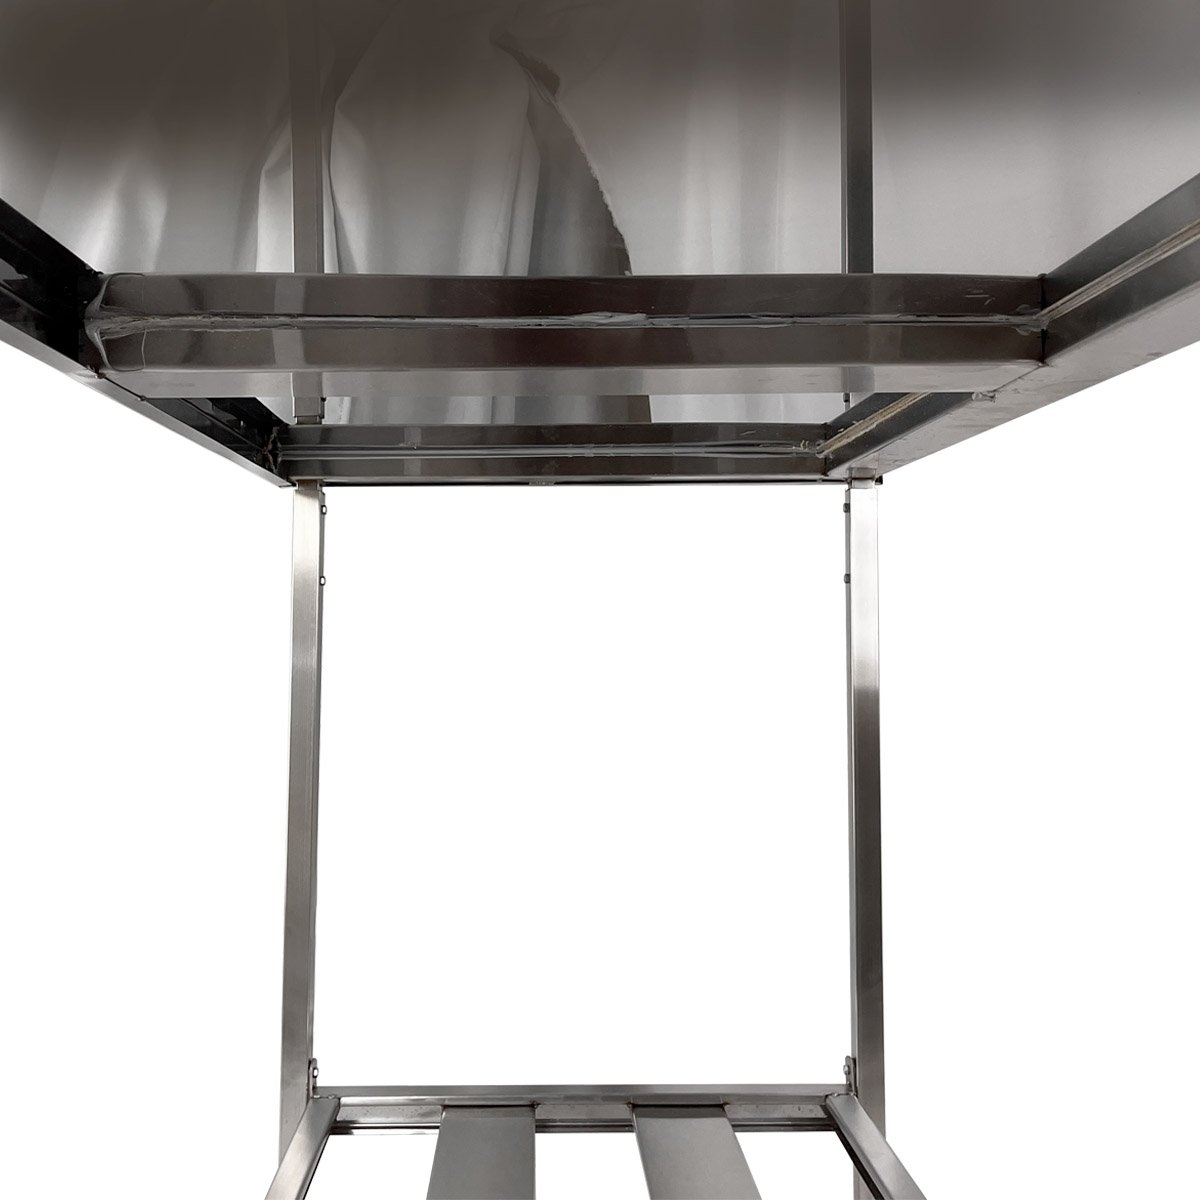 Mesa Aço Inox Profissional 120x60x90 Cm com Espelho Nortinox - 4